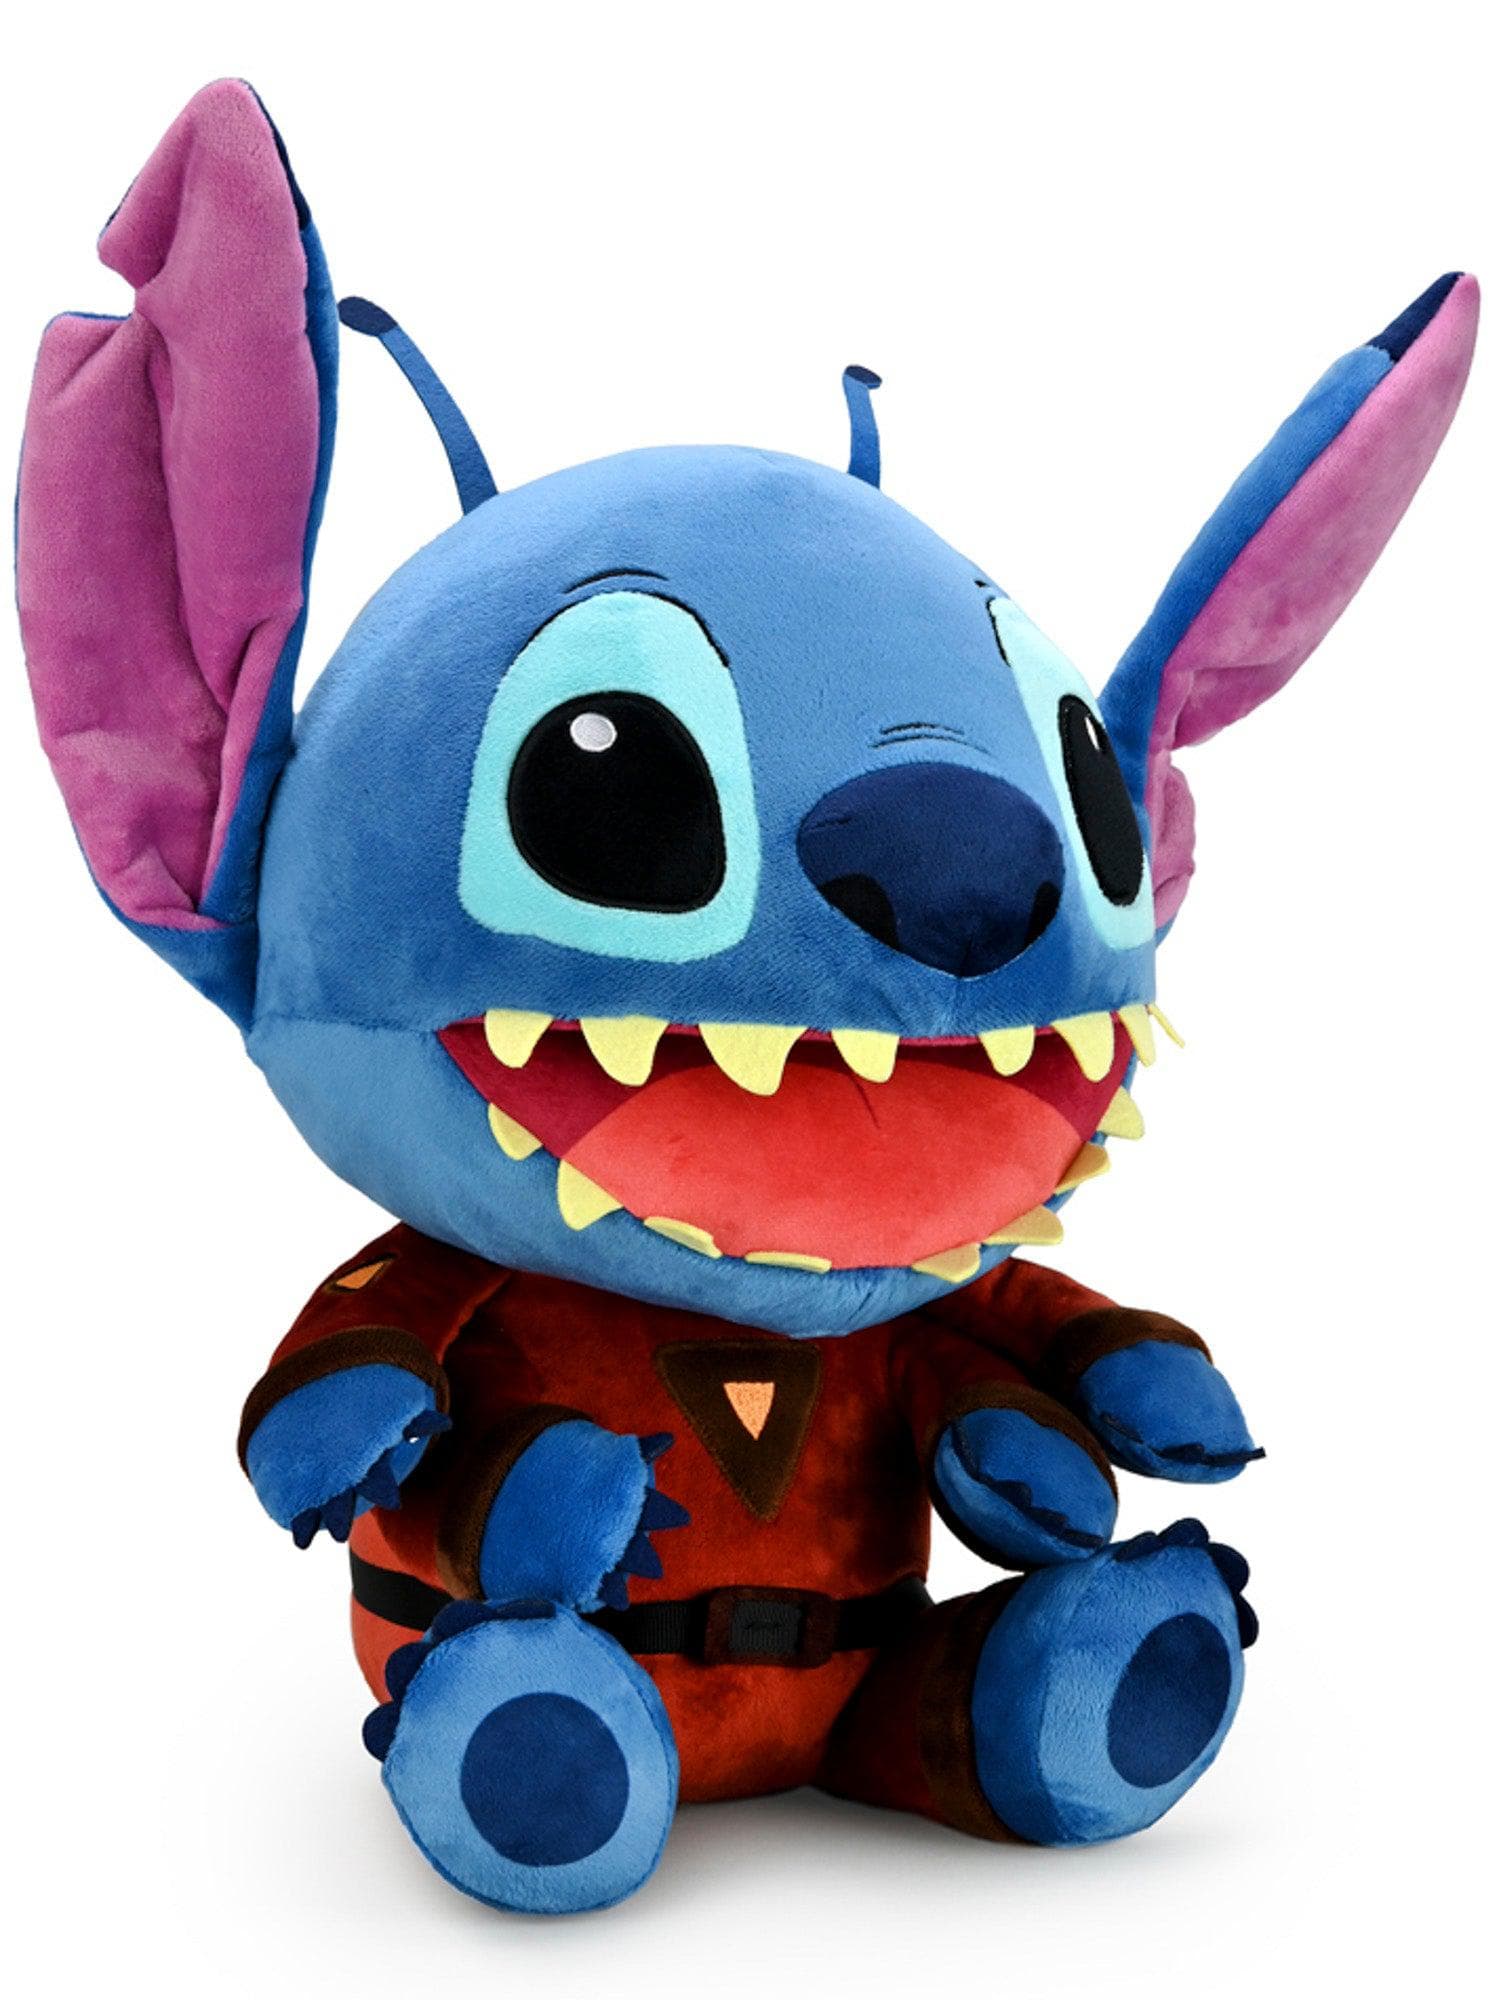 Kidrobot - HugMe Plush - Disney's Lilo & Stitch - Evil Stitch - costumes.com